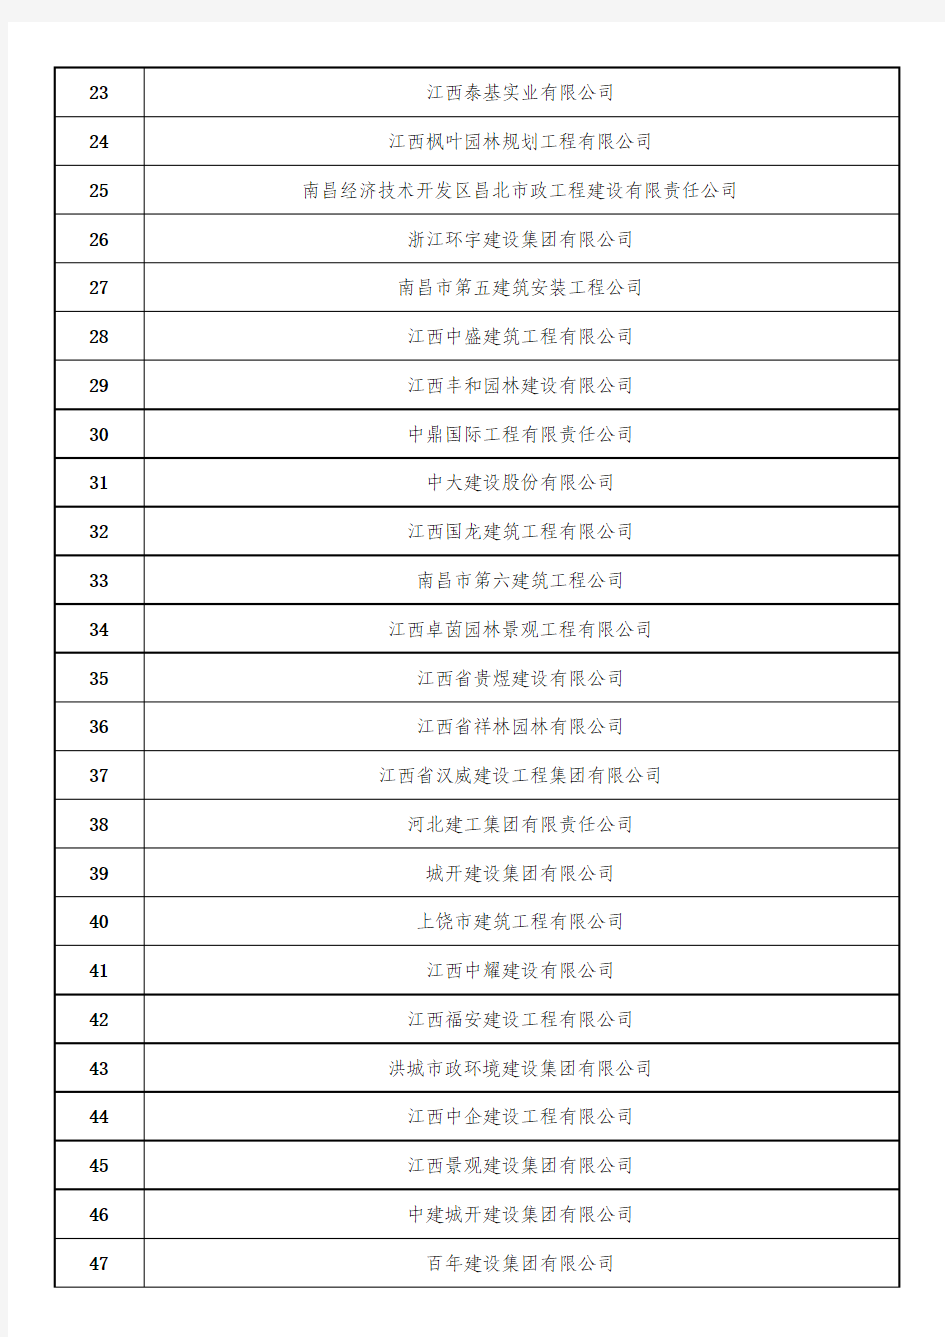 2016年《南昌市政府投资工程预选承包商名录》(市政库)